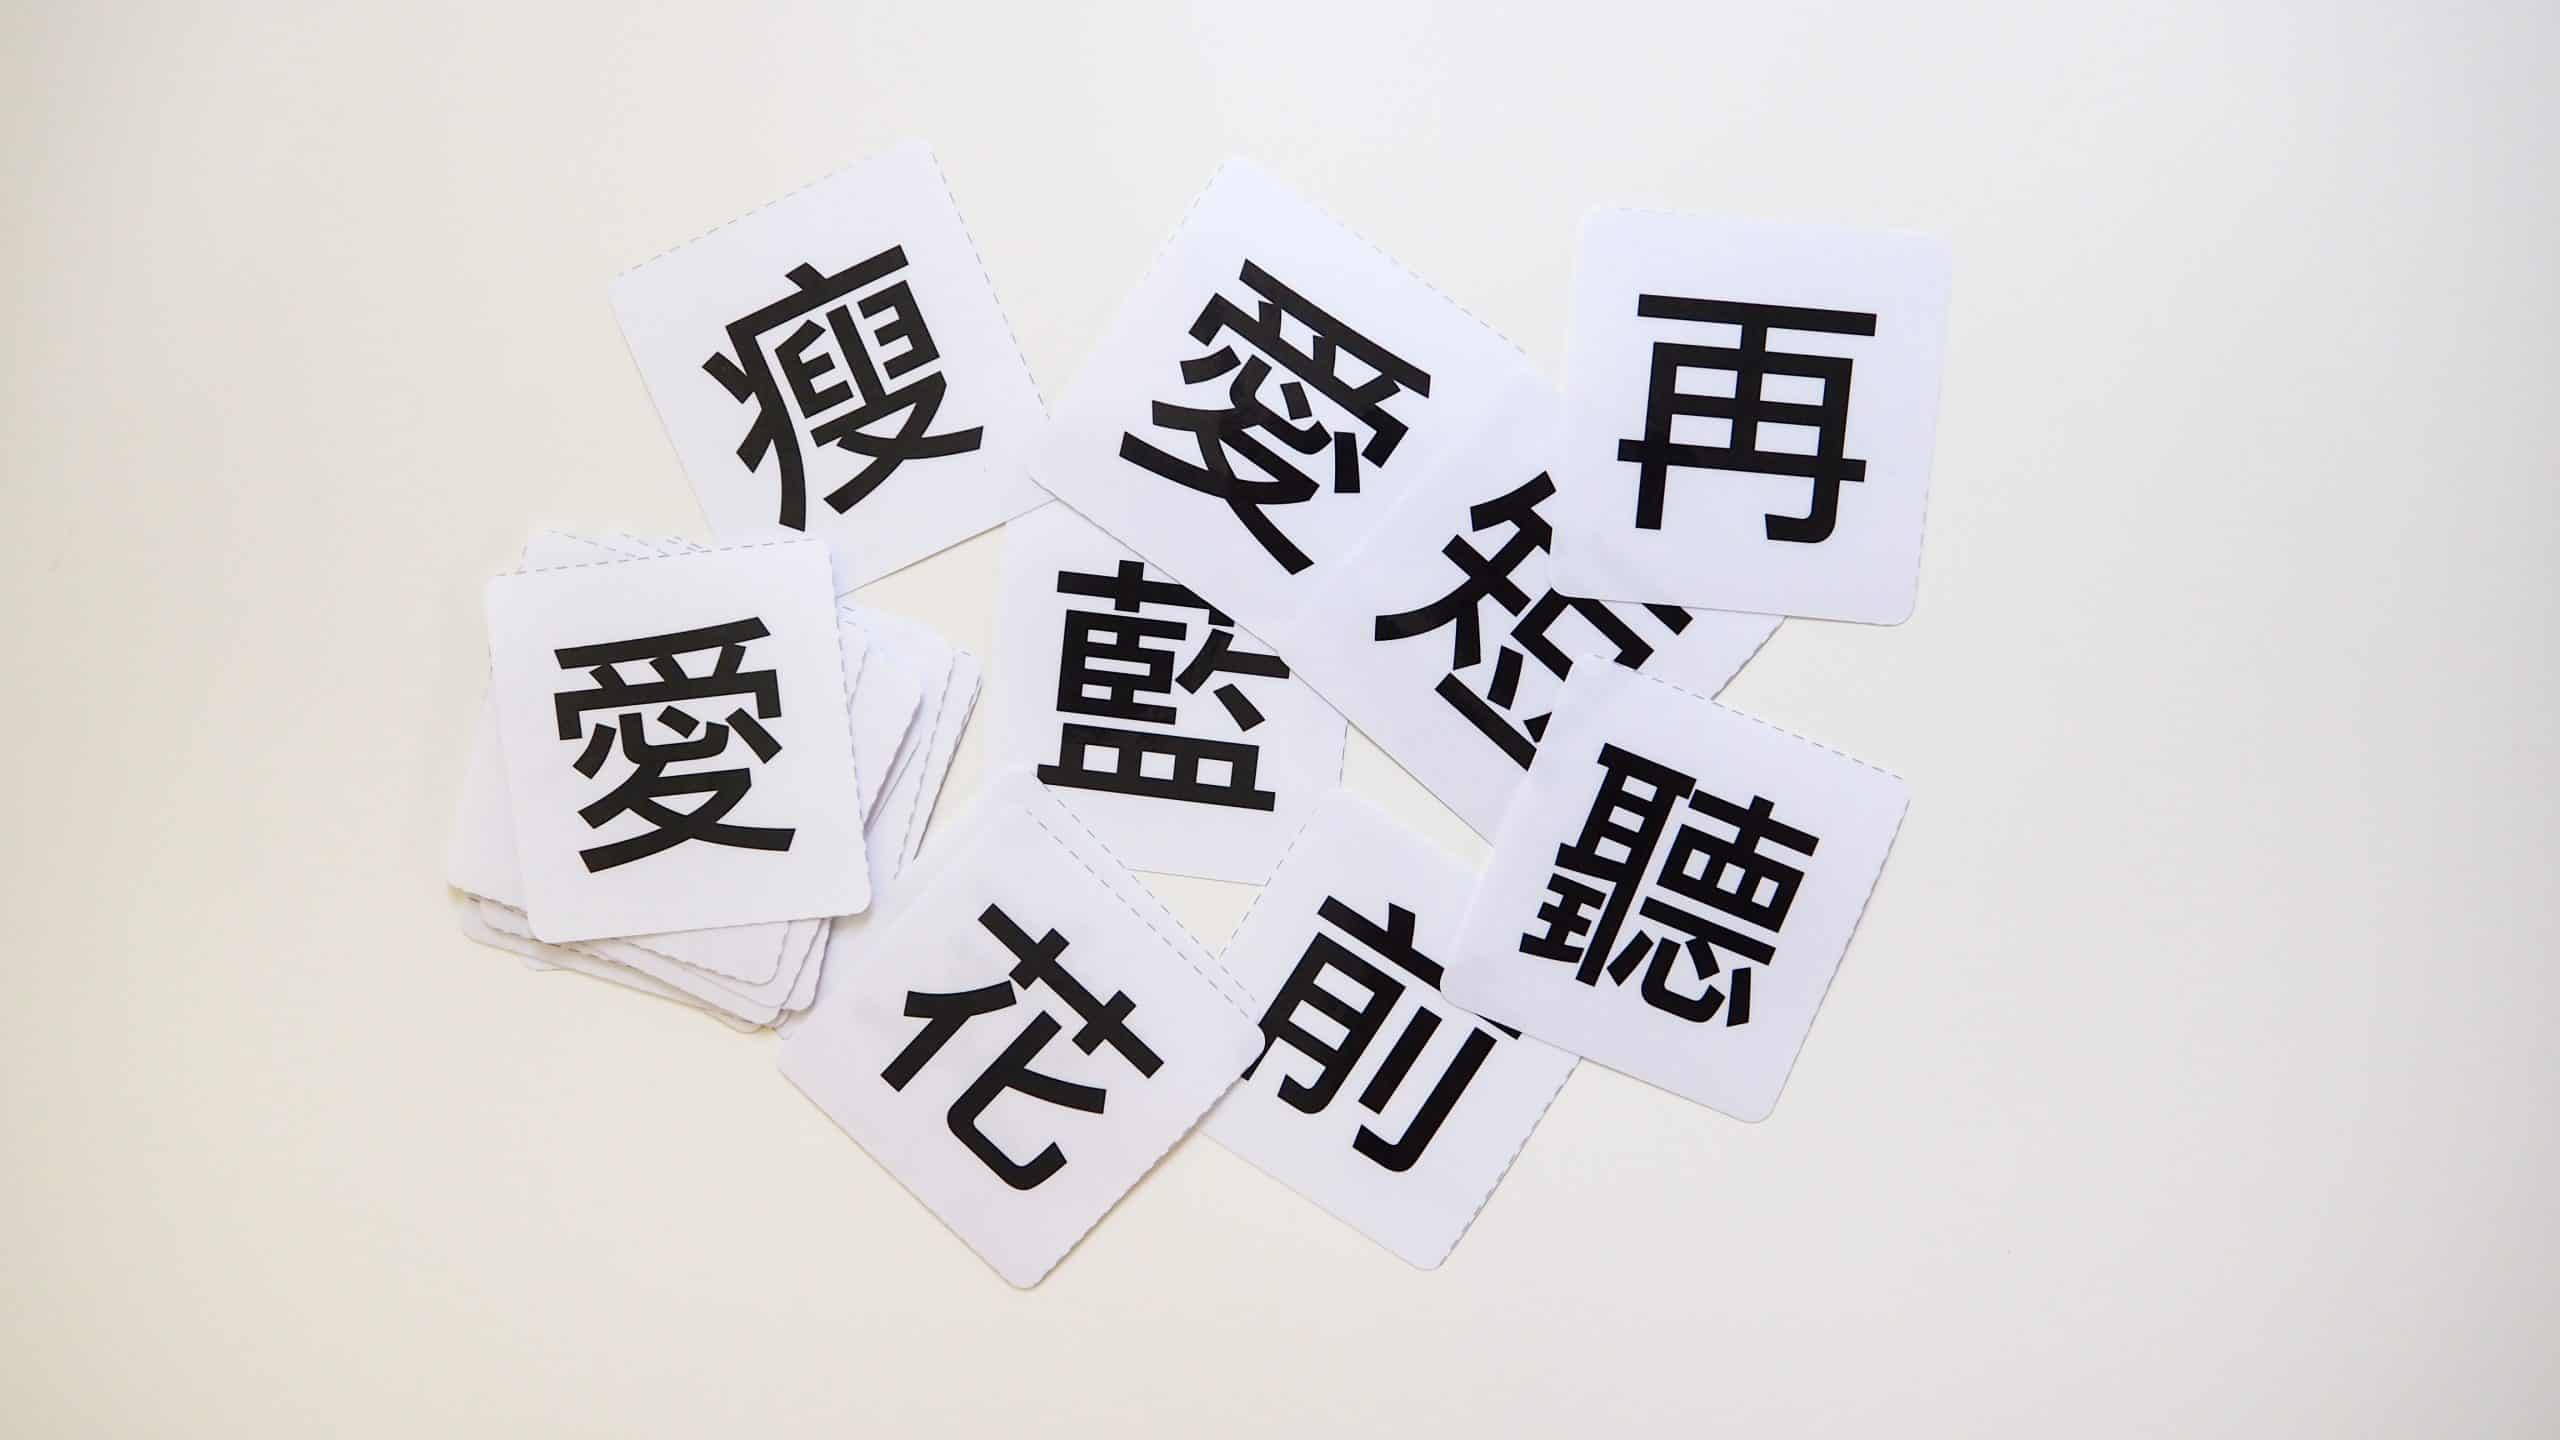 自製中文字卡 免費 中文字卡圖檔